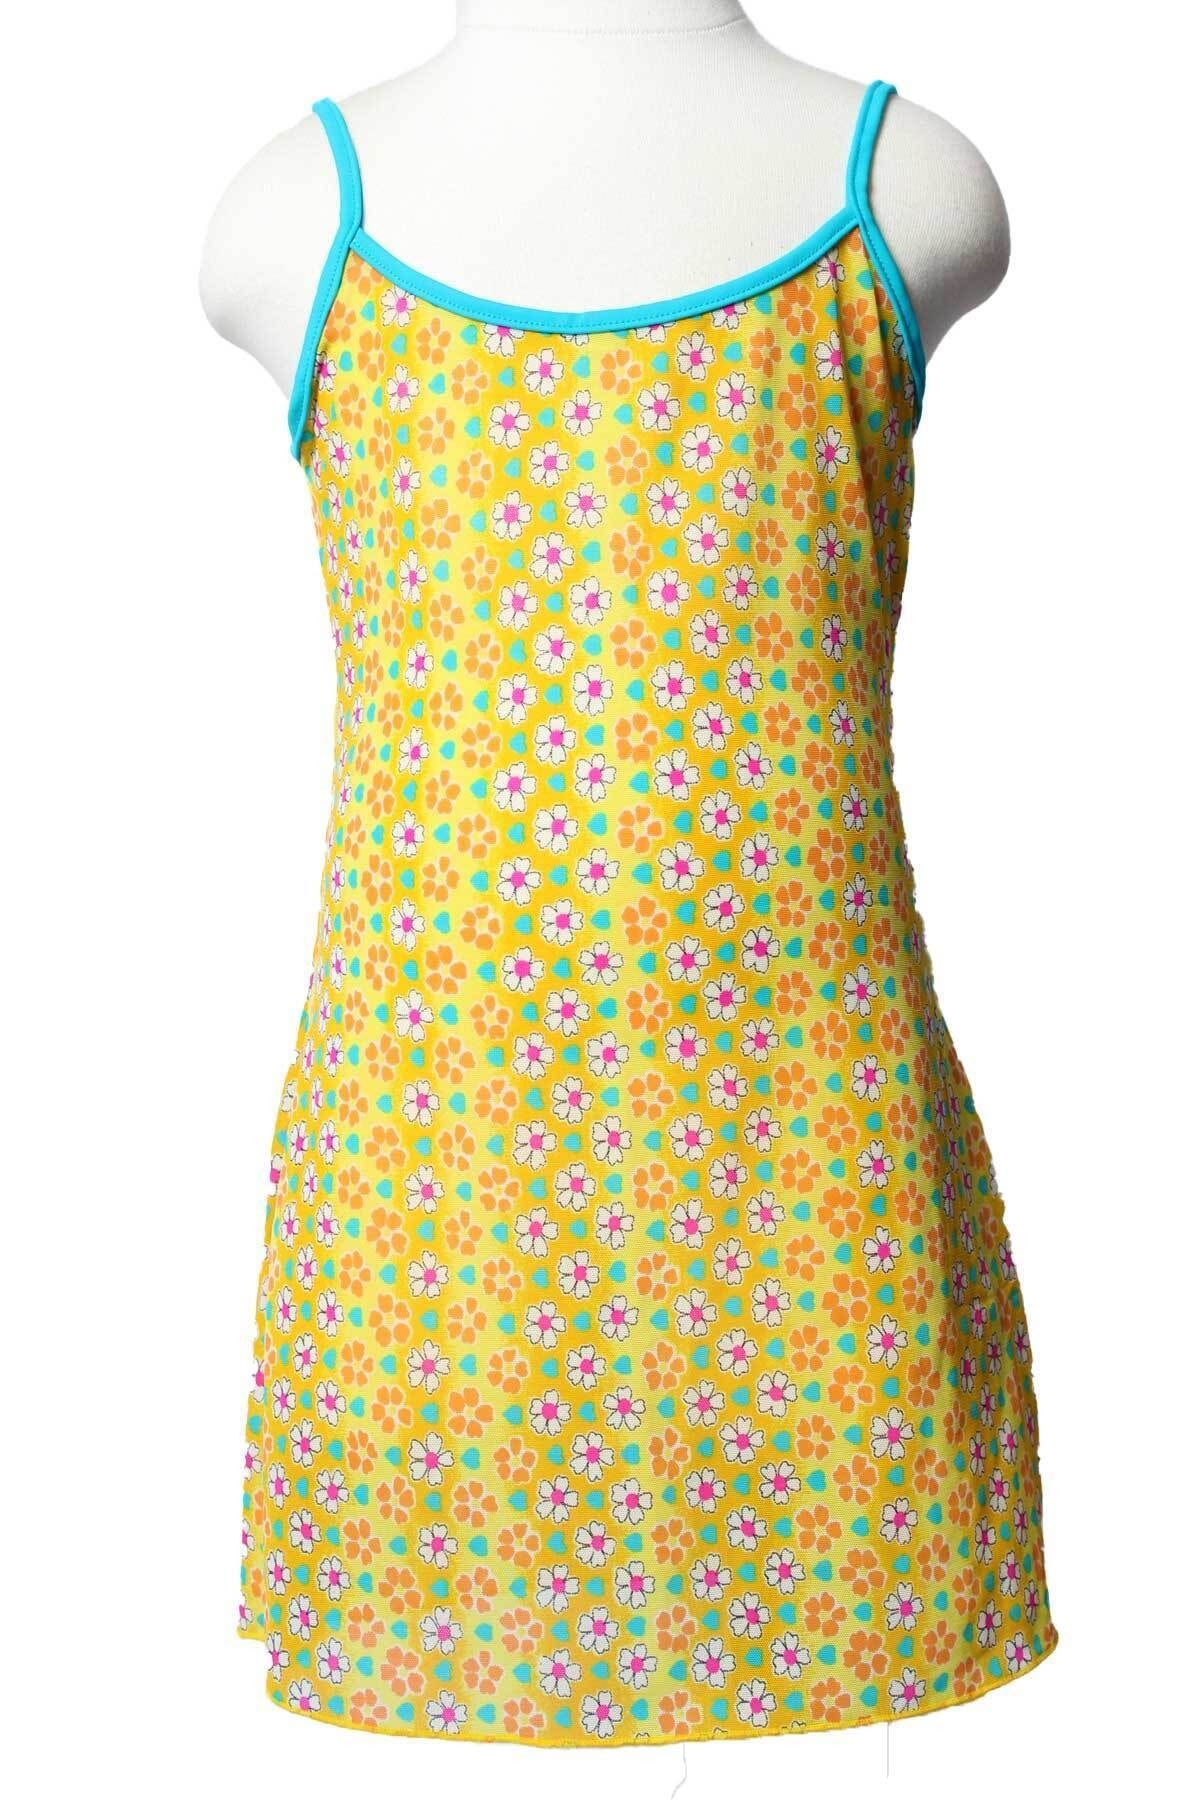 Sude Ayl Kız Çocuk Kk.sarı Çiçek Desenli Askılı Biye Detaylı Tül Deniz Elbisesi 167-32